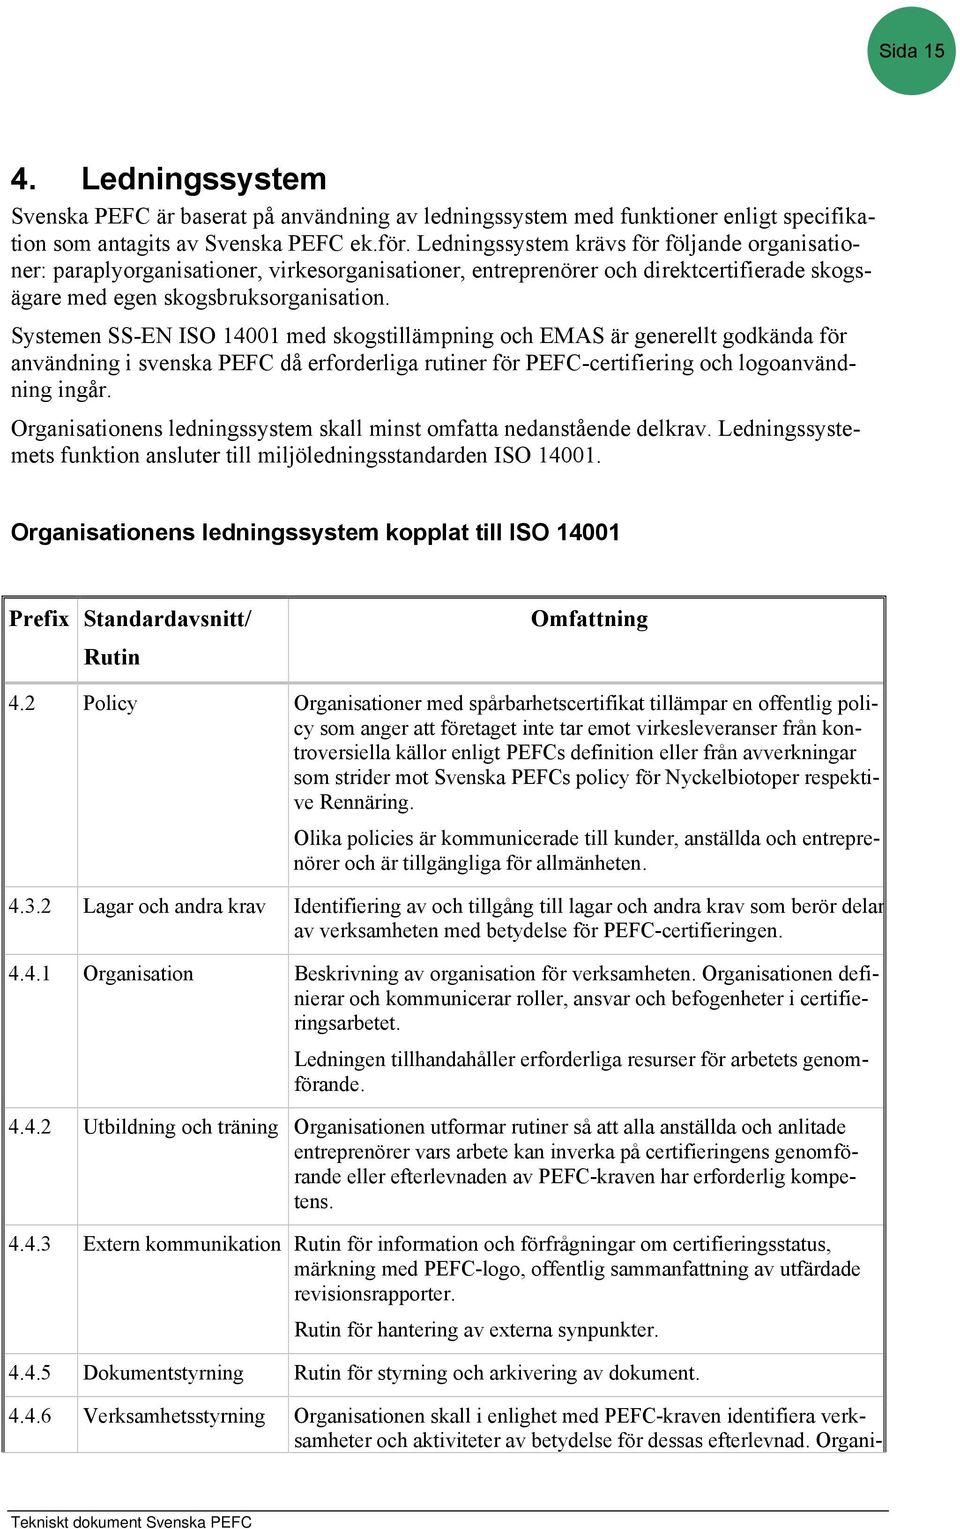 Systemen SS-EN ISO 14001 med skogstillämpning och EMAS är generellt godkända för användning i svenska PEFC då erforderliga rutiner för PEFC-certifiering och logoanvändning ingår.